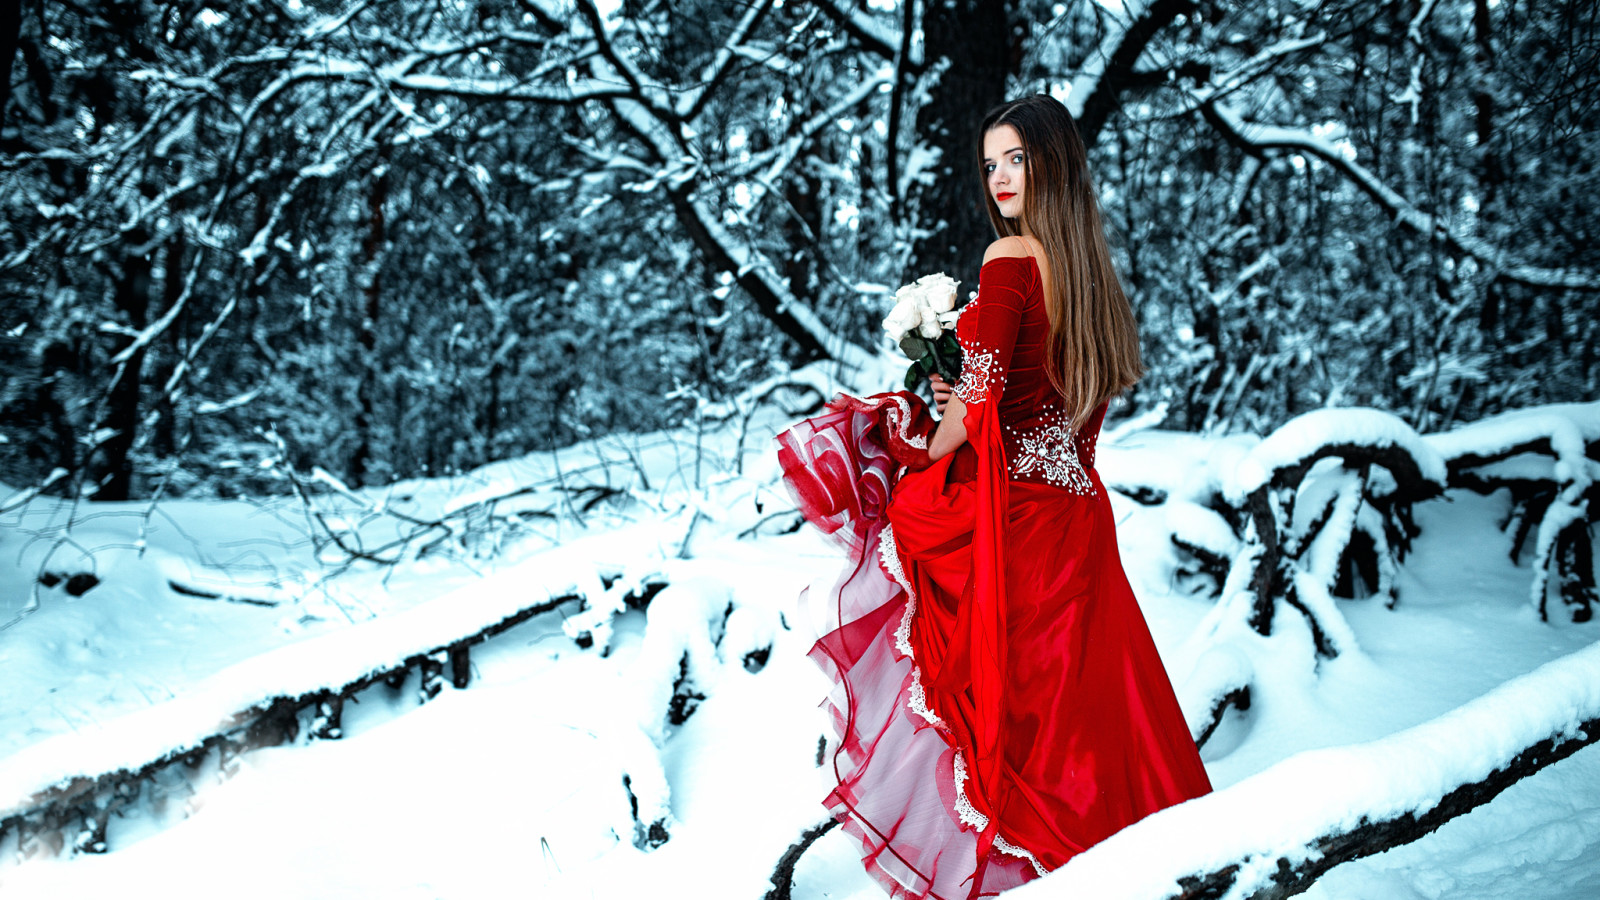 หิมะ, ป่า, สาว, ฤดูหนาว, ดอกกุหลาบ, ช่อดอกไม้, แต่งตัว, ในสีแดง